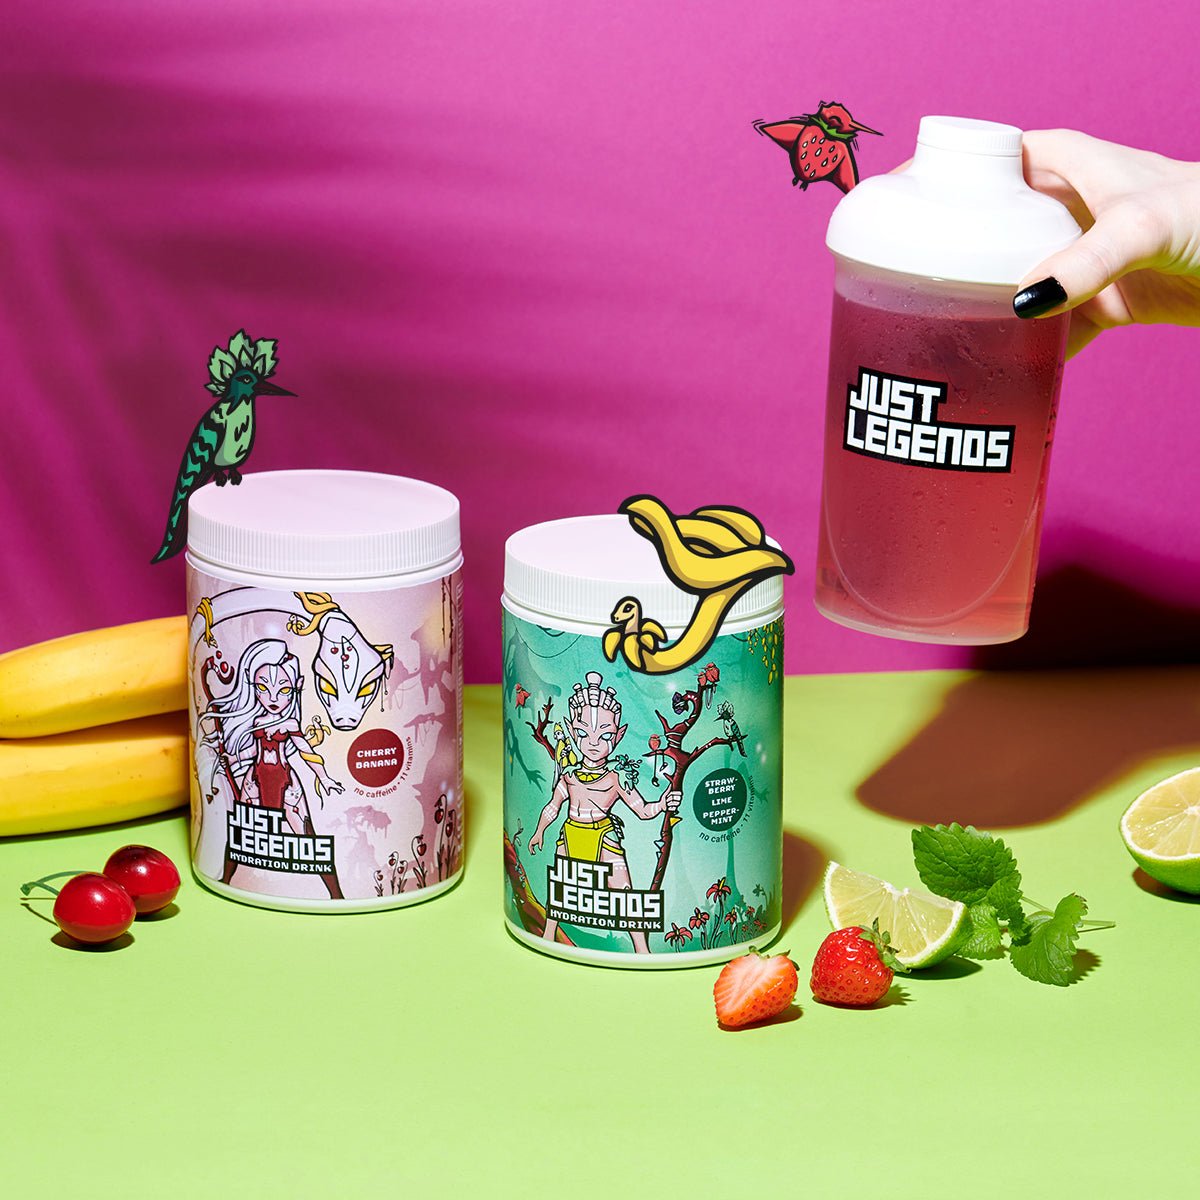 Just Legends Hydration Drink Strawberry Lime Peppermint | Funktionaler, veganer Hydration Drink auf Pulverbasis ohne Zucker, mit wenig Kalorien, vielen Vitaminen und natürlichen Aromen.